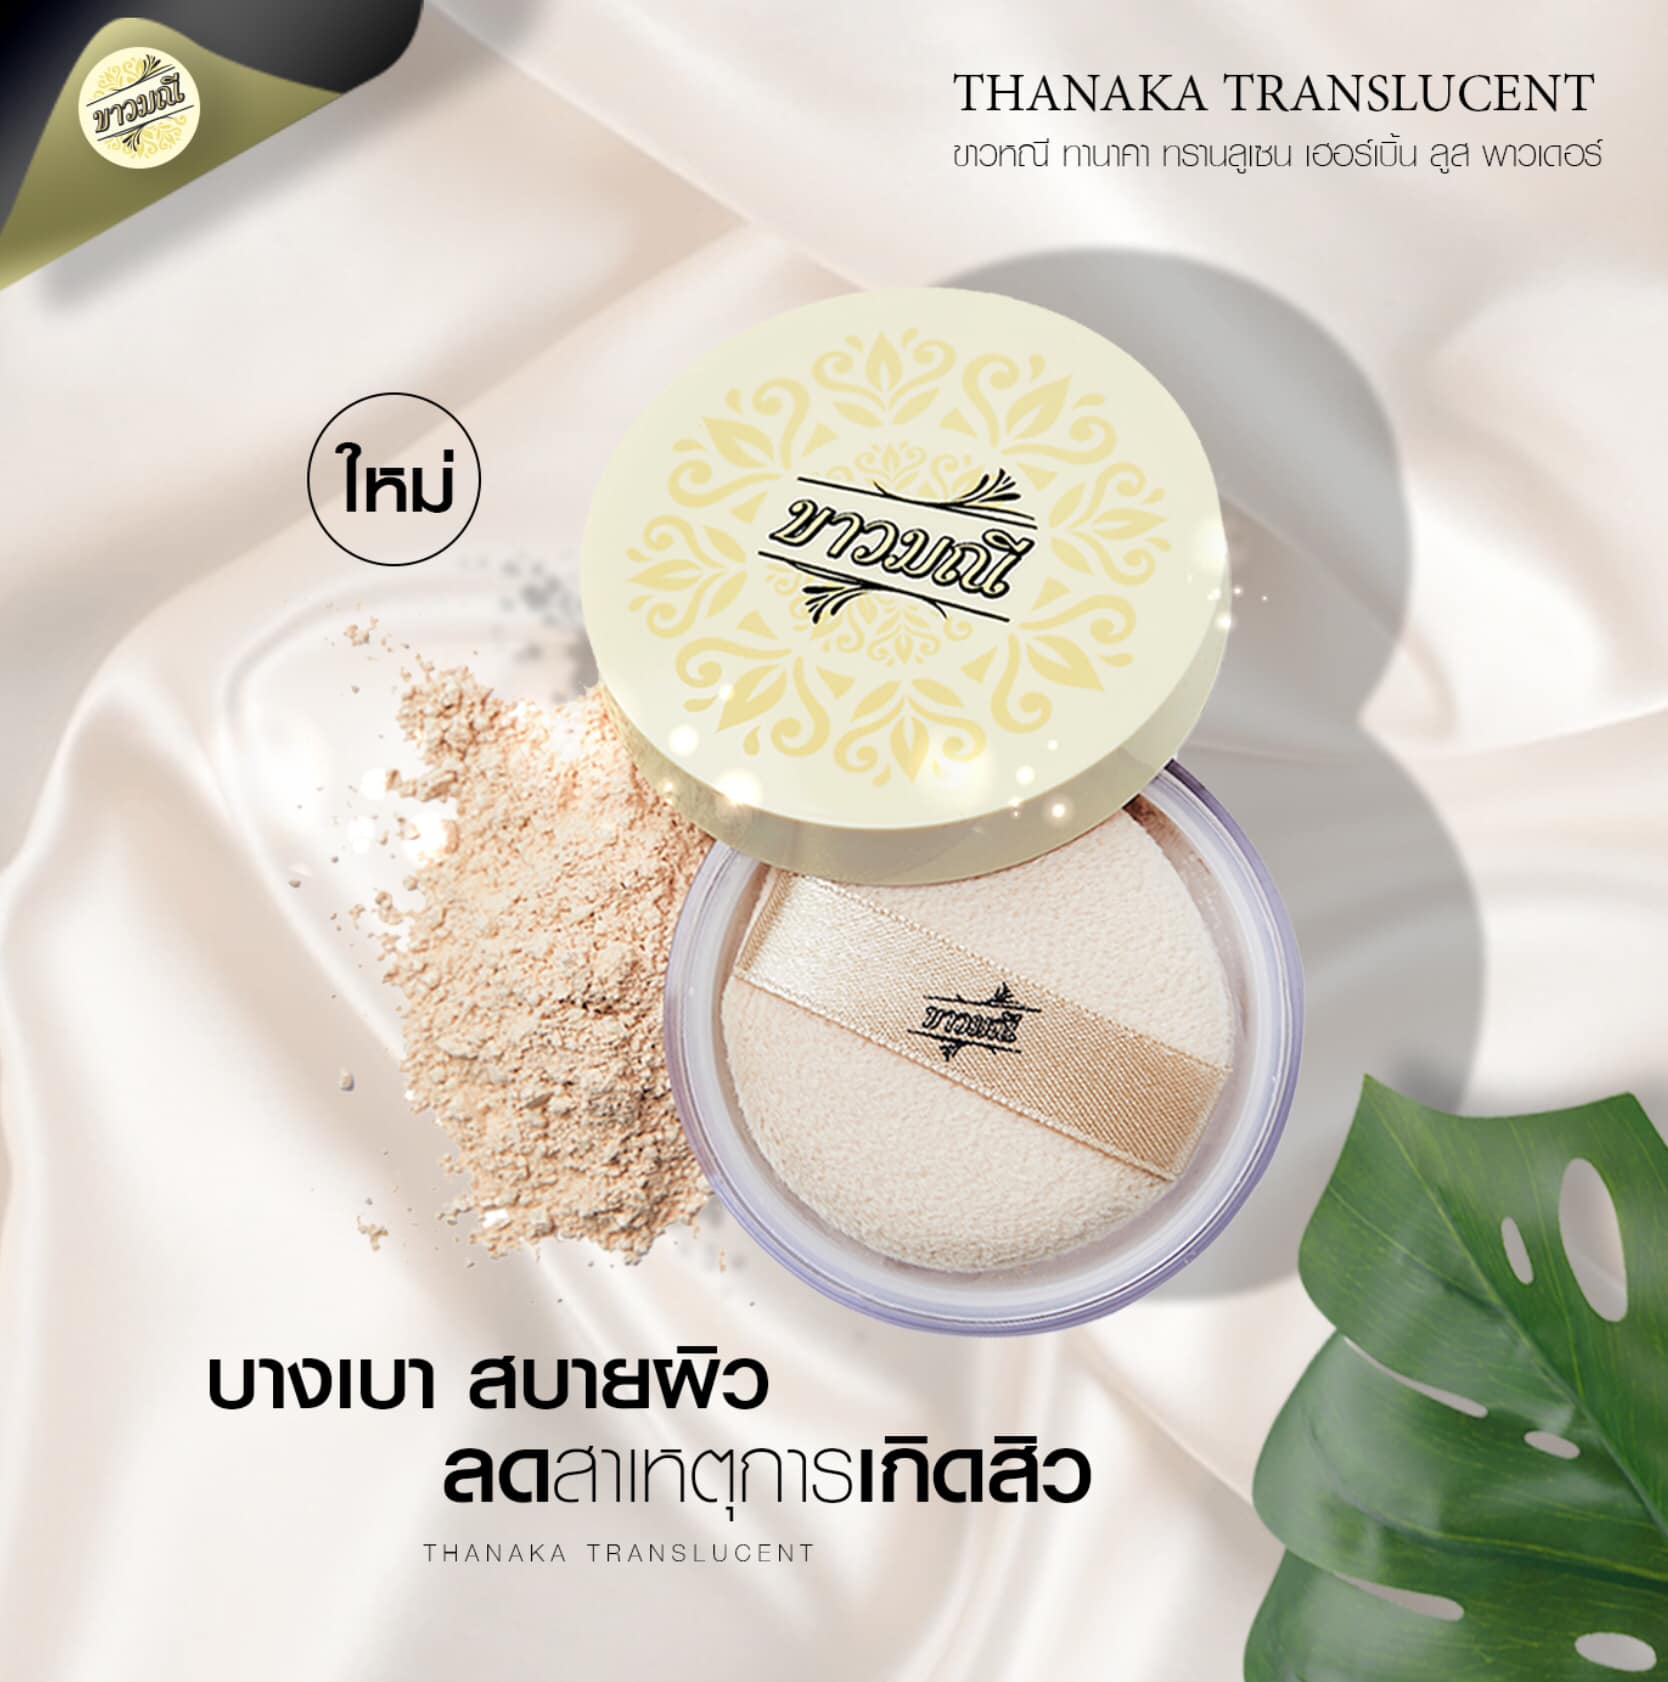 ขาวมณี Tanaka Translucent Herbal Loose Powder 